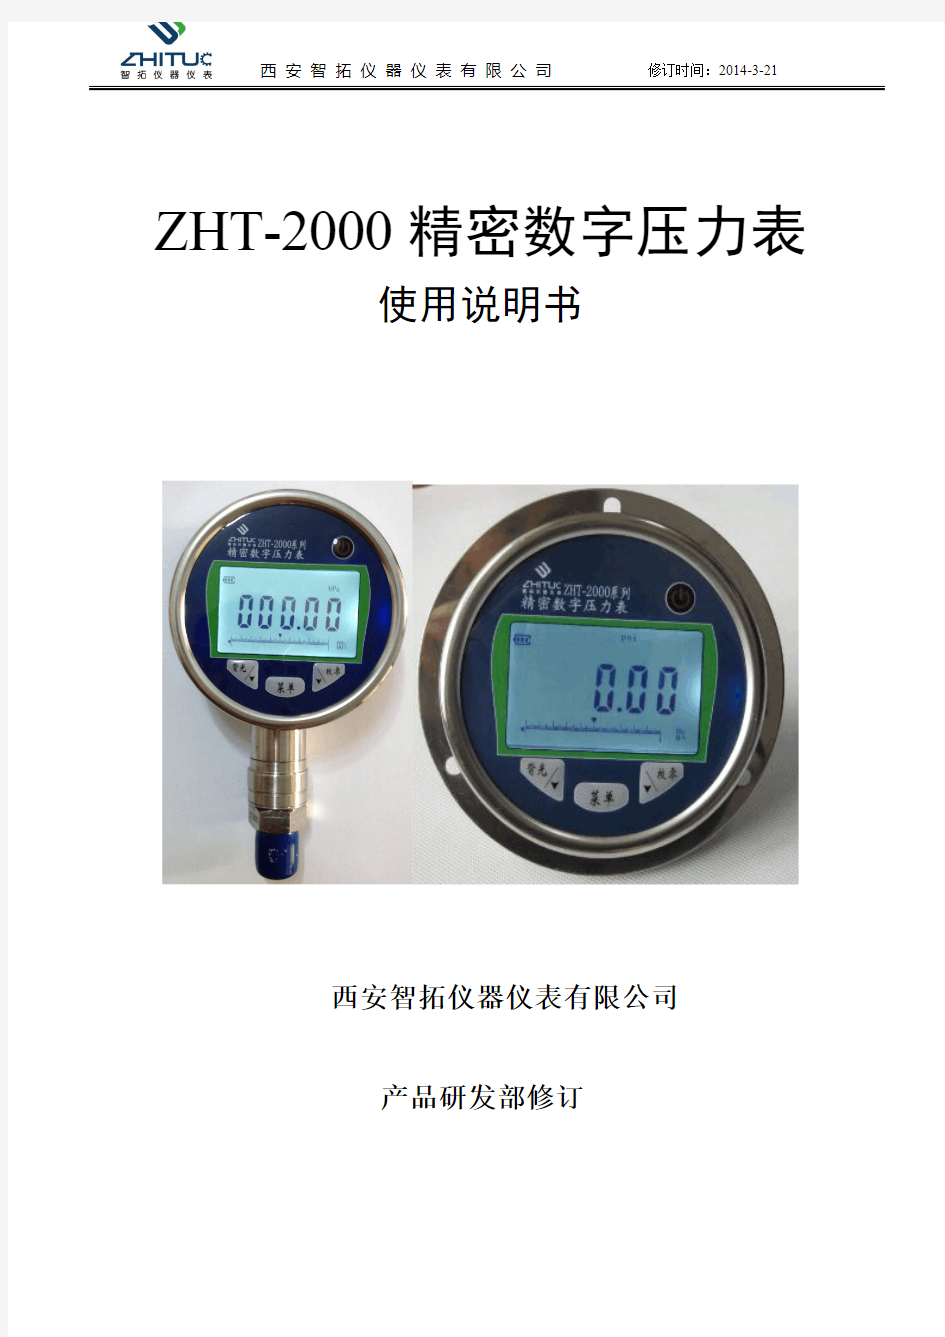 ZHT-2000精密数字压力表使用说明书